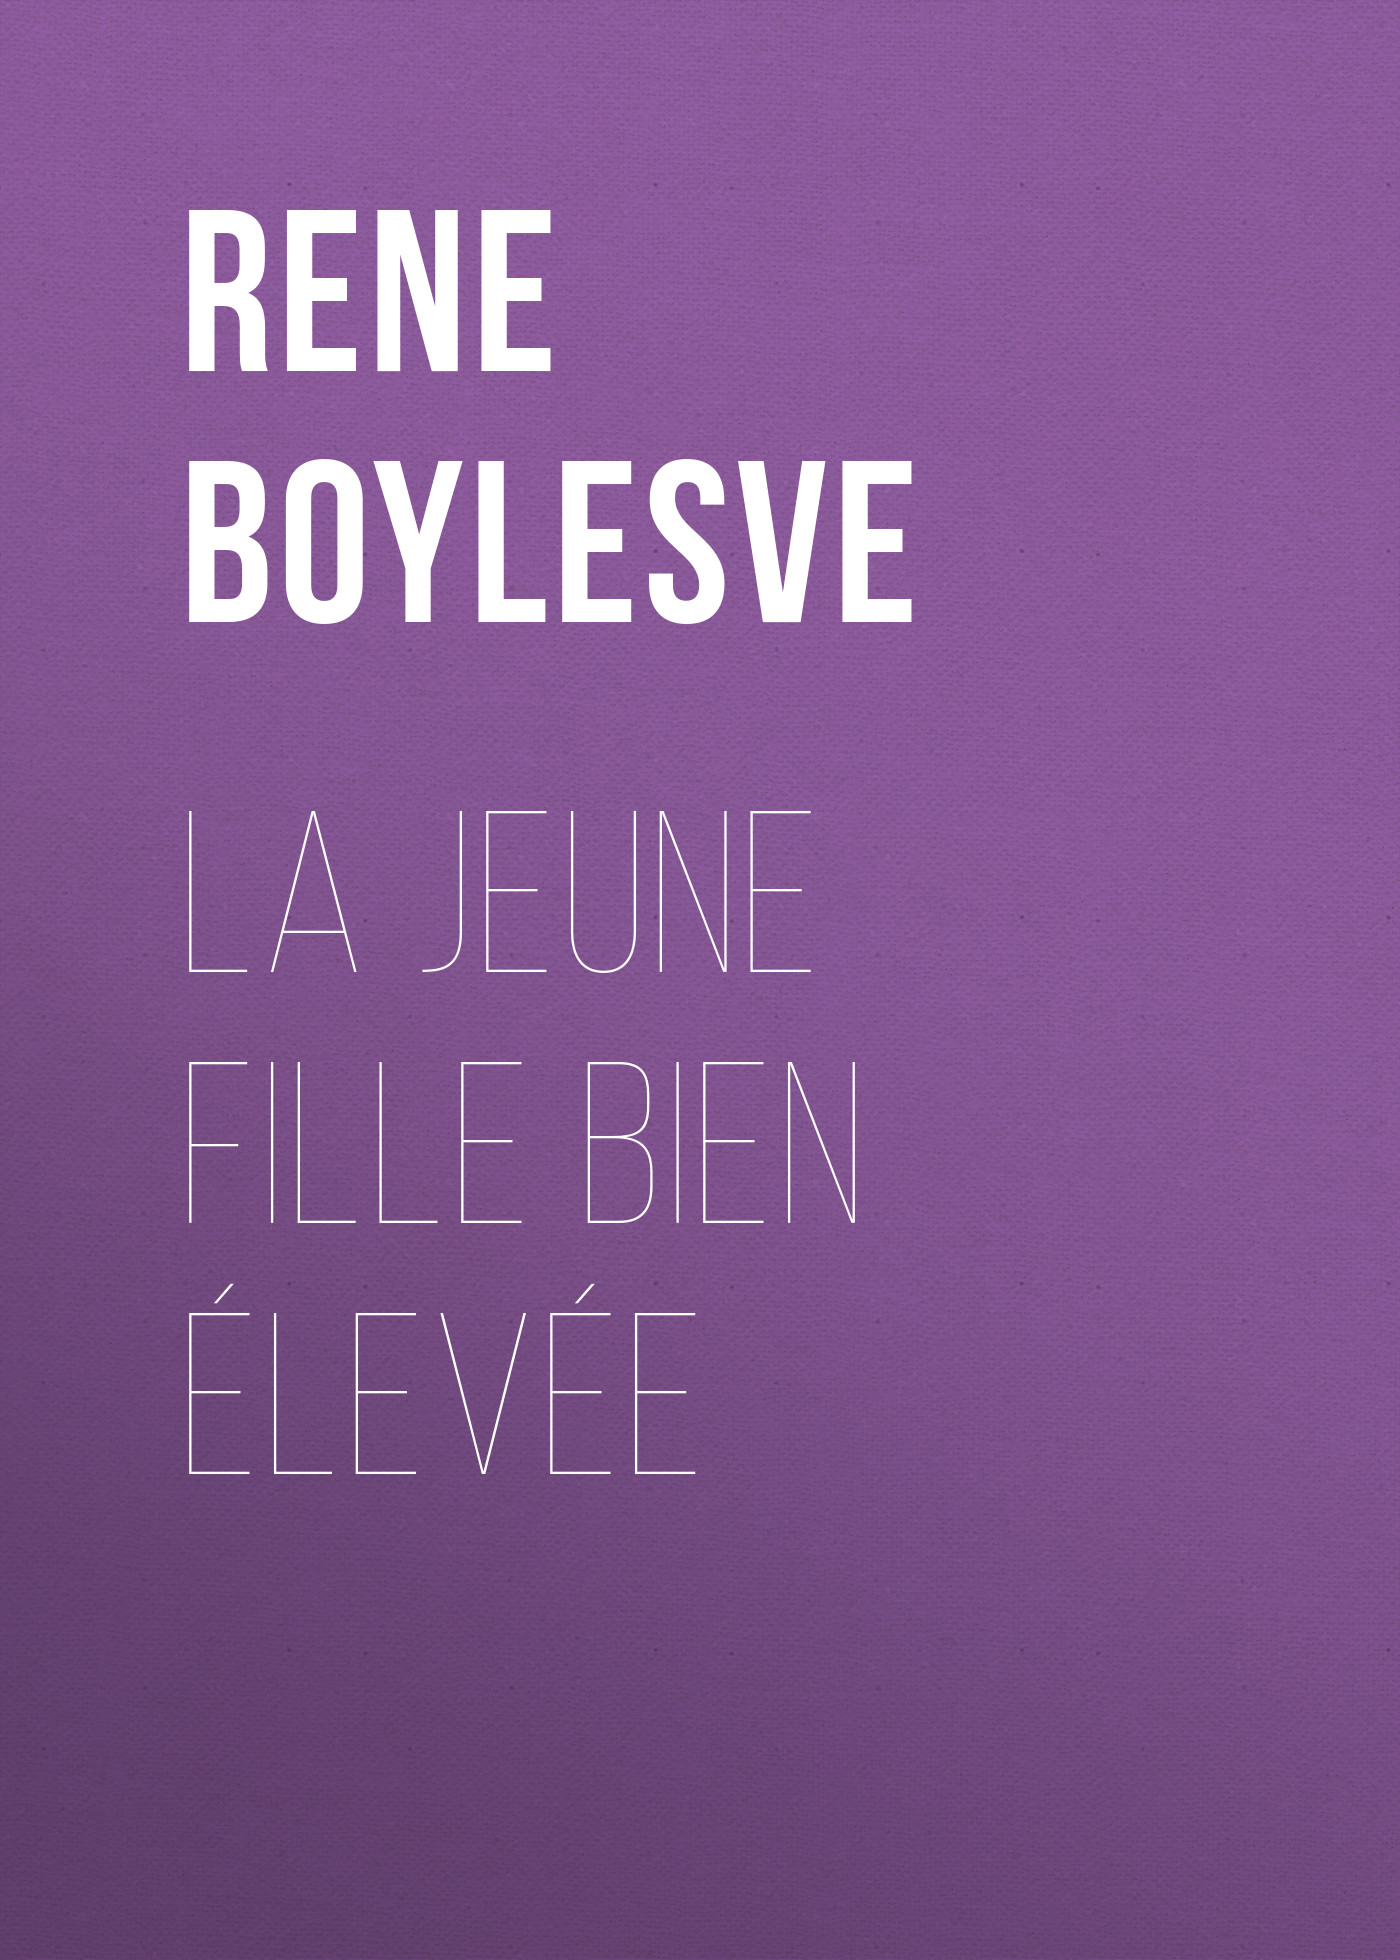 Книга La jeune fille bien élevée из серии , созданная René Boylesve, может относится к жанру Зарубежная старинная литература, Зарубежная классика. Стоимость электронной книги La jeune fille bien élevée с идентификатором 24179612 составляет 0 руб.